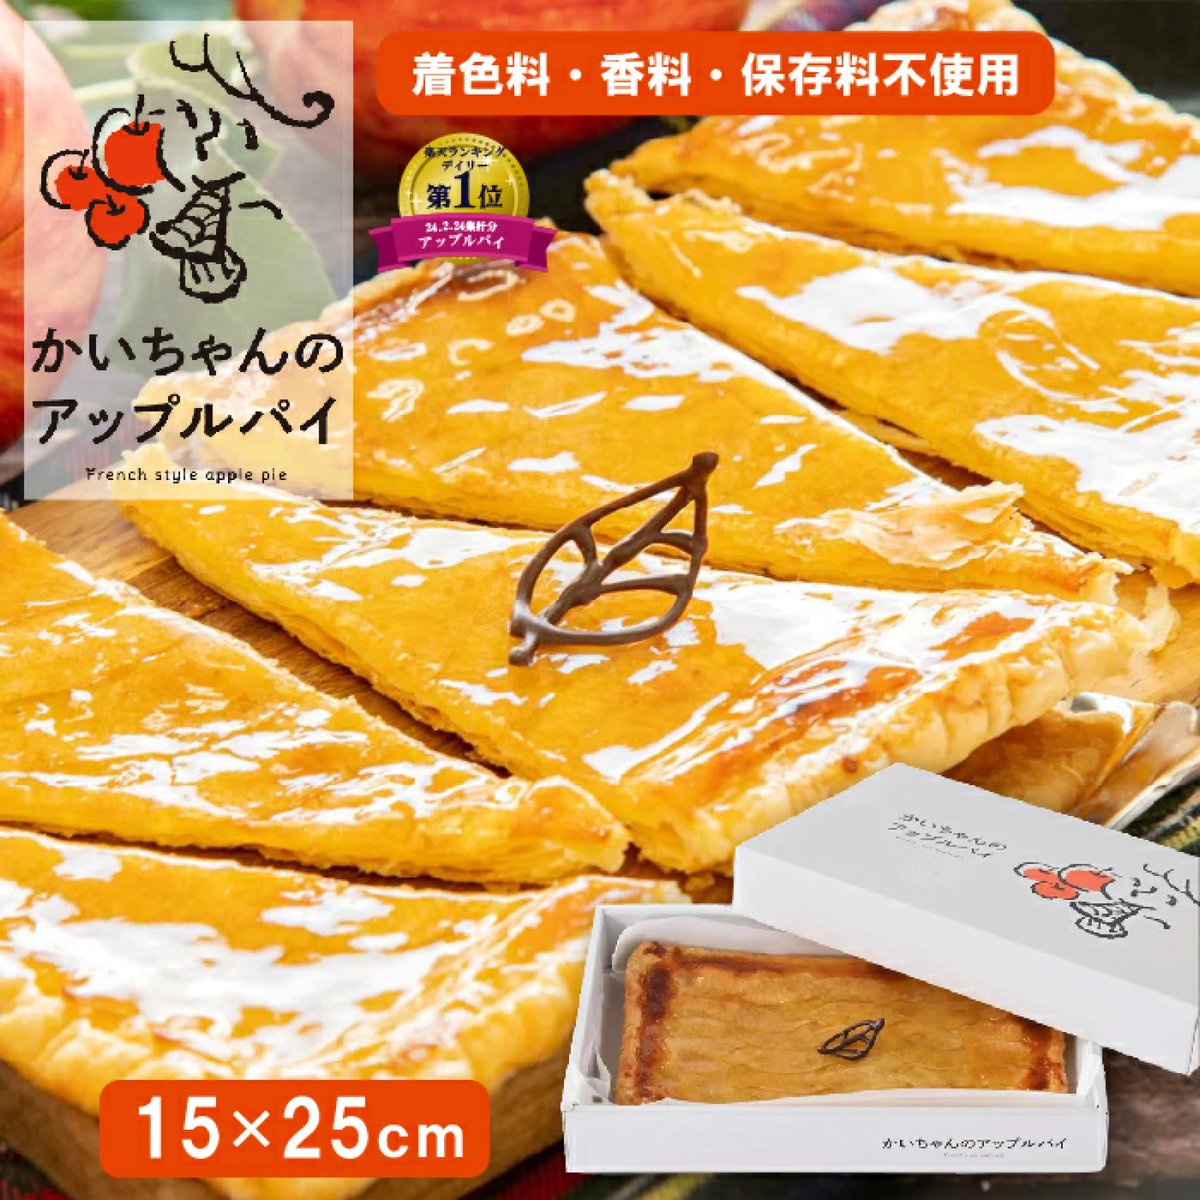 🎁 #プレゼントキャンペーン 🎁

マツコの知らない世界で紹介された
予約殺到のアップルパイが当たる！
計5名様にプレゼント🎁✨
￣￣￣￣￣￣￣￣￣￣￣￣￣￣￣
#リポストキャンペーン 

【〆切】
5/15

【応募方法】
①RP(RT)♻️
②私をフォロー♪

【楽天市場】
item.rakuten.co.jp/piitikupaatiku…